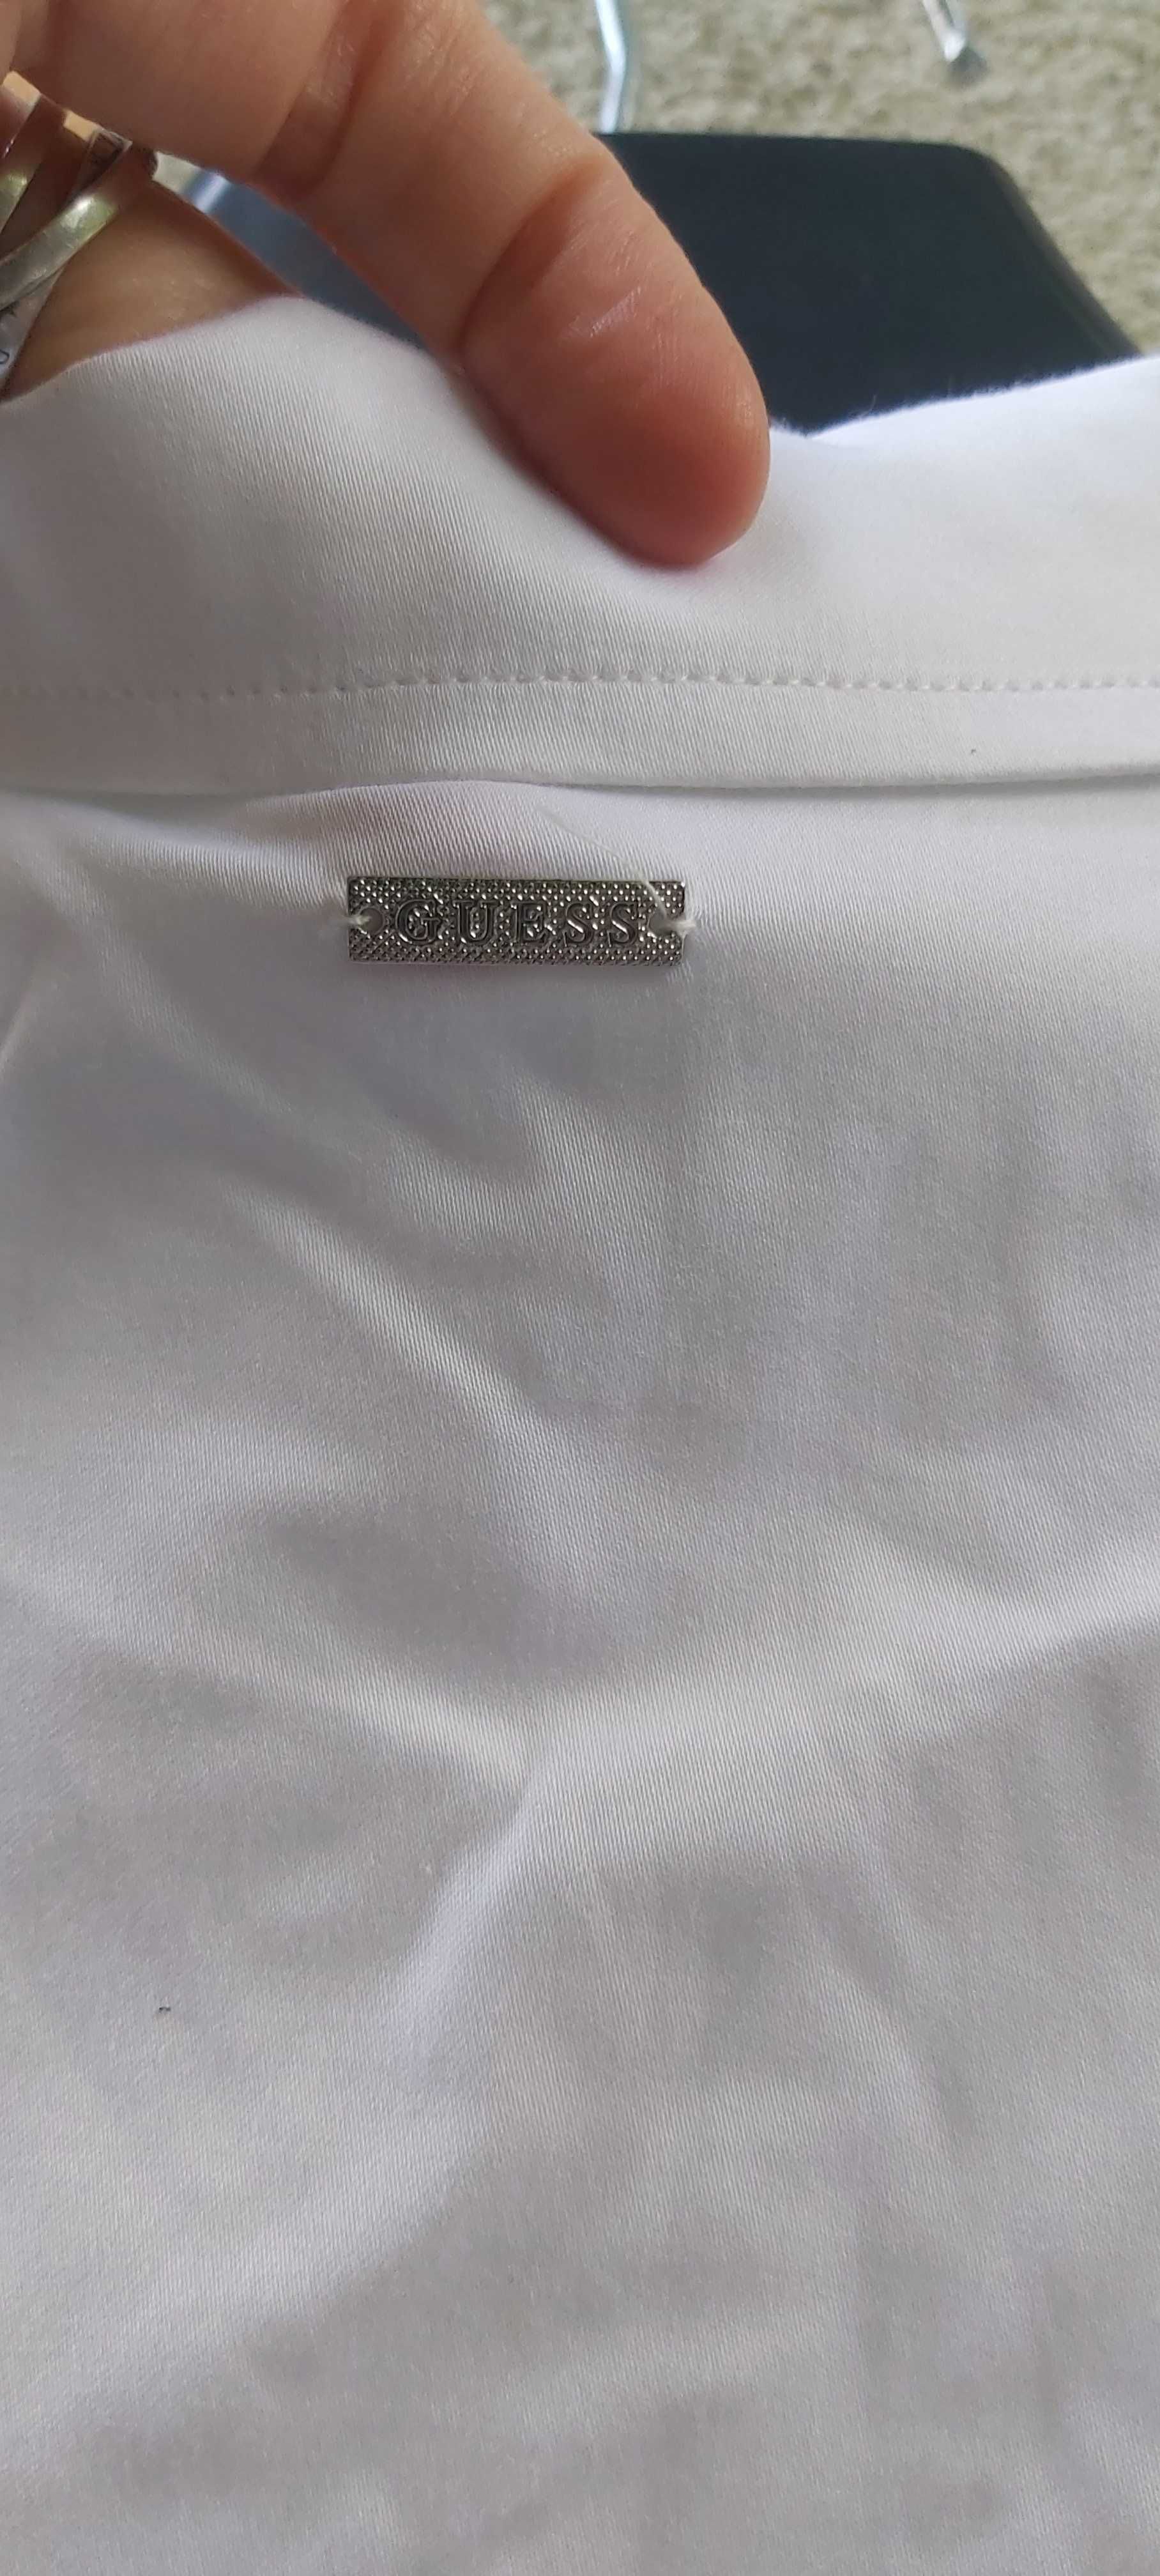 NOWA klasyczna biała koszula GUESS eu m 38 a080